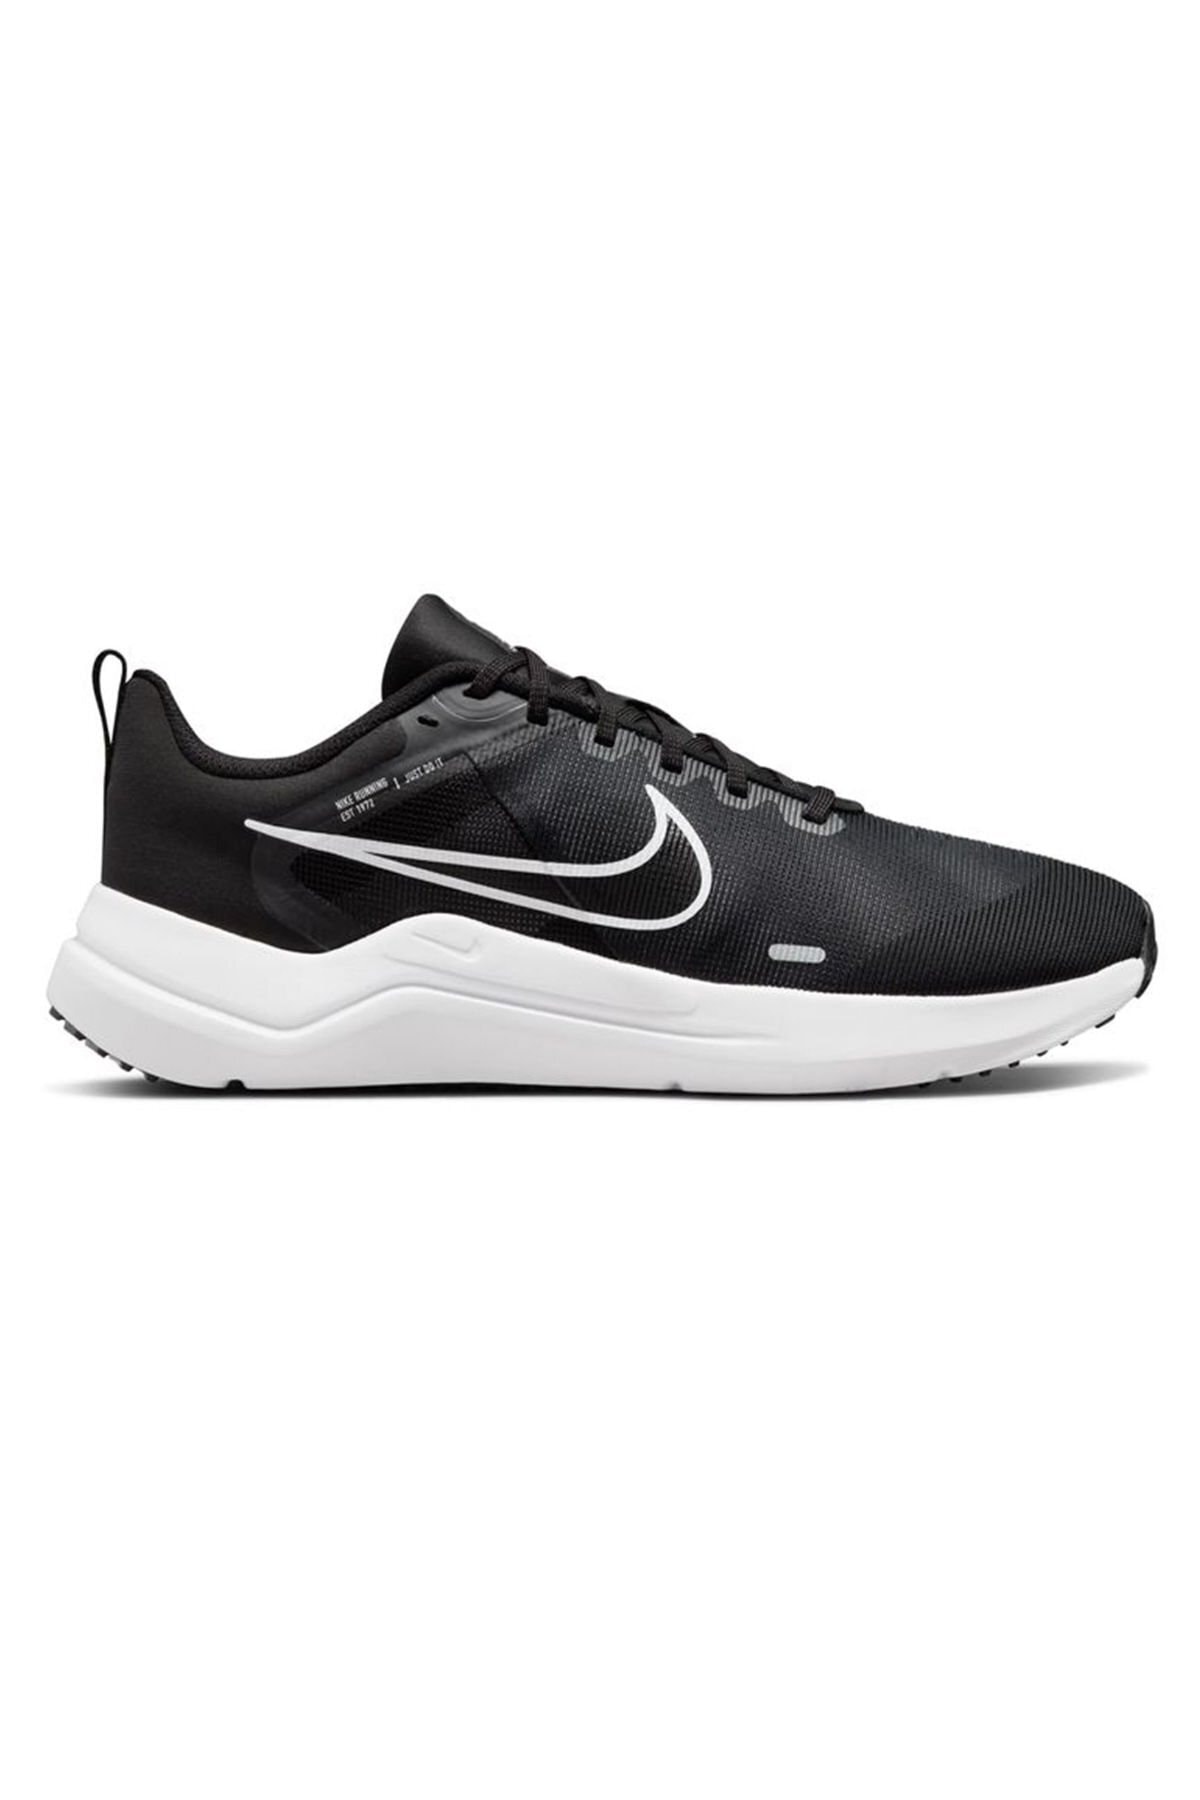 Nike Downshifter 12 Erkek Koşu Ayakkabısı Siyah Dd9293-001